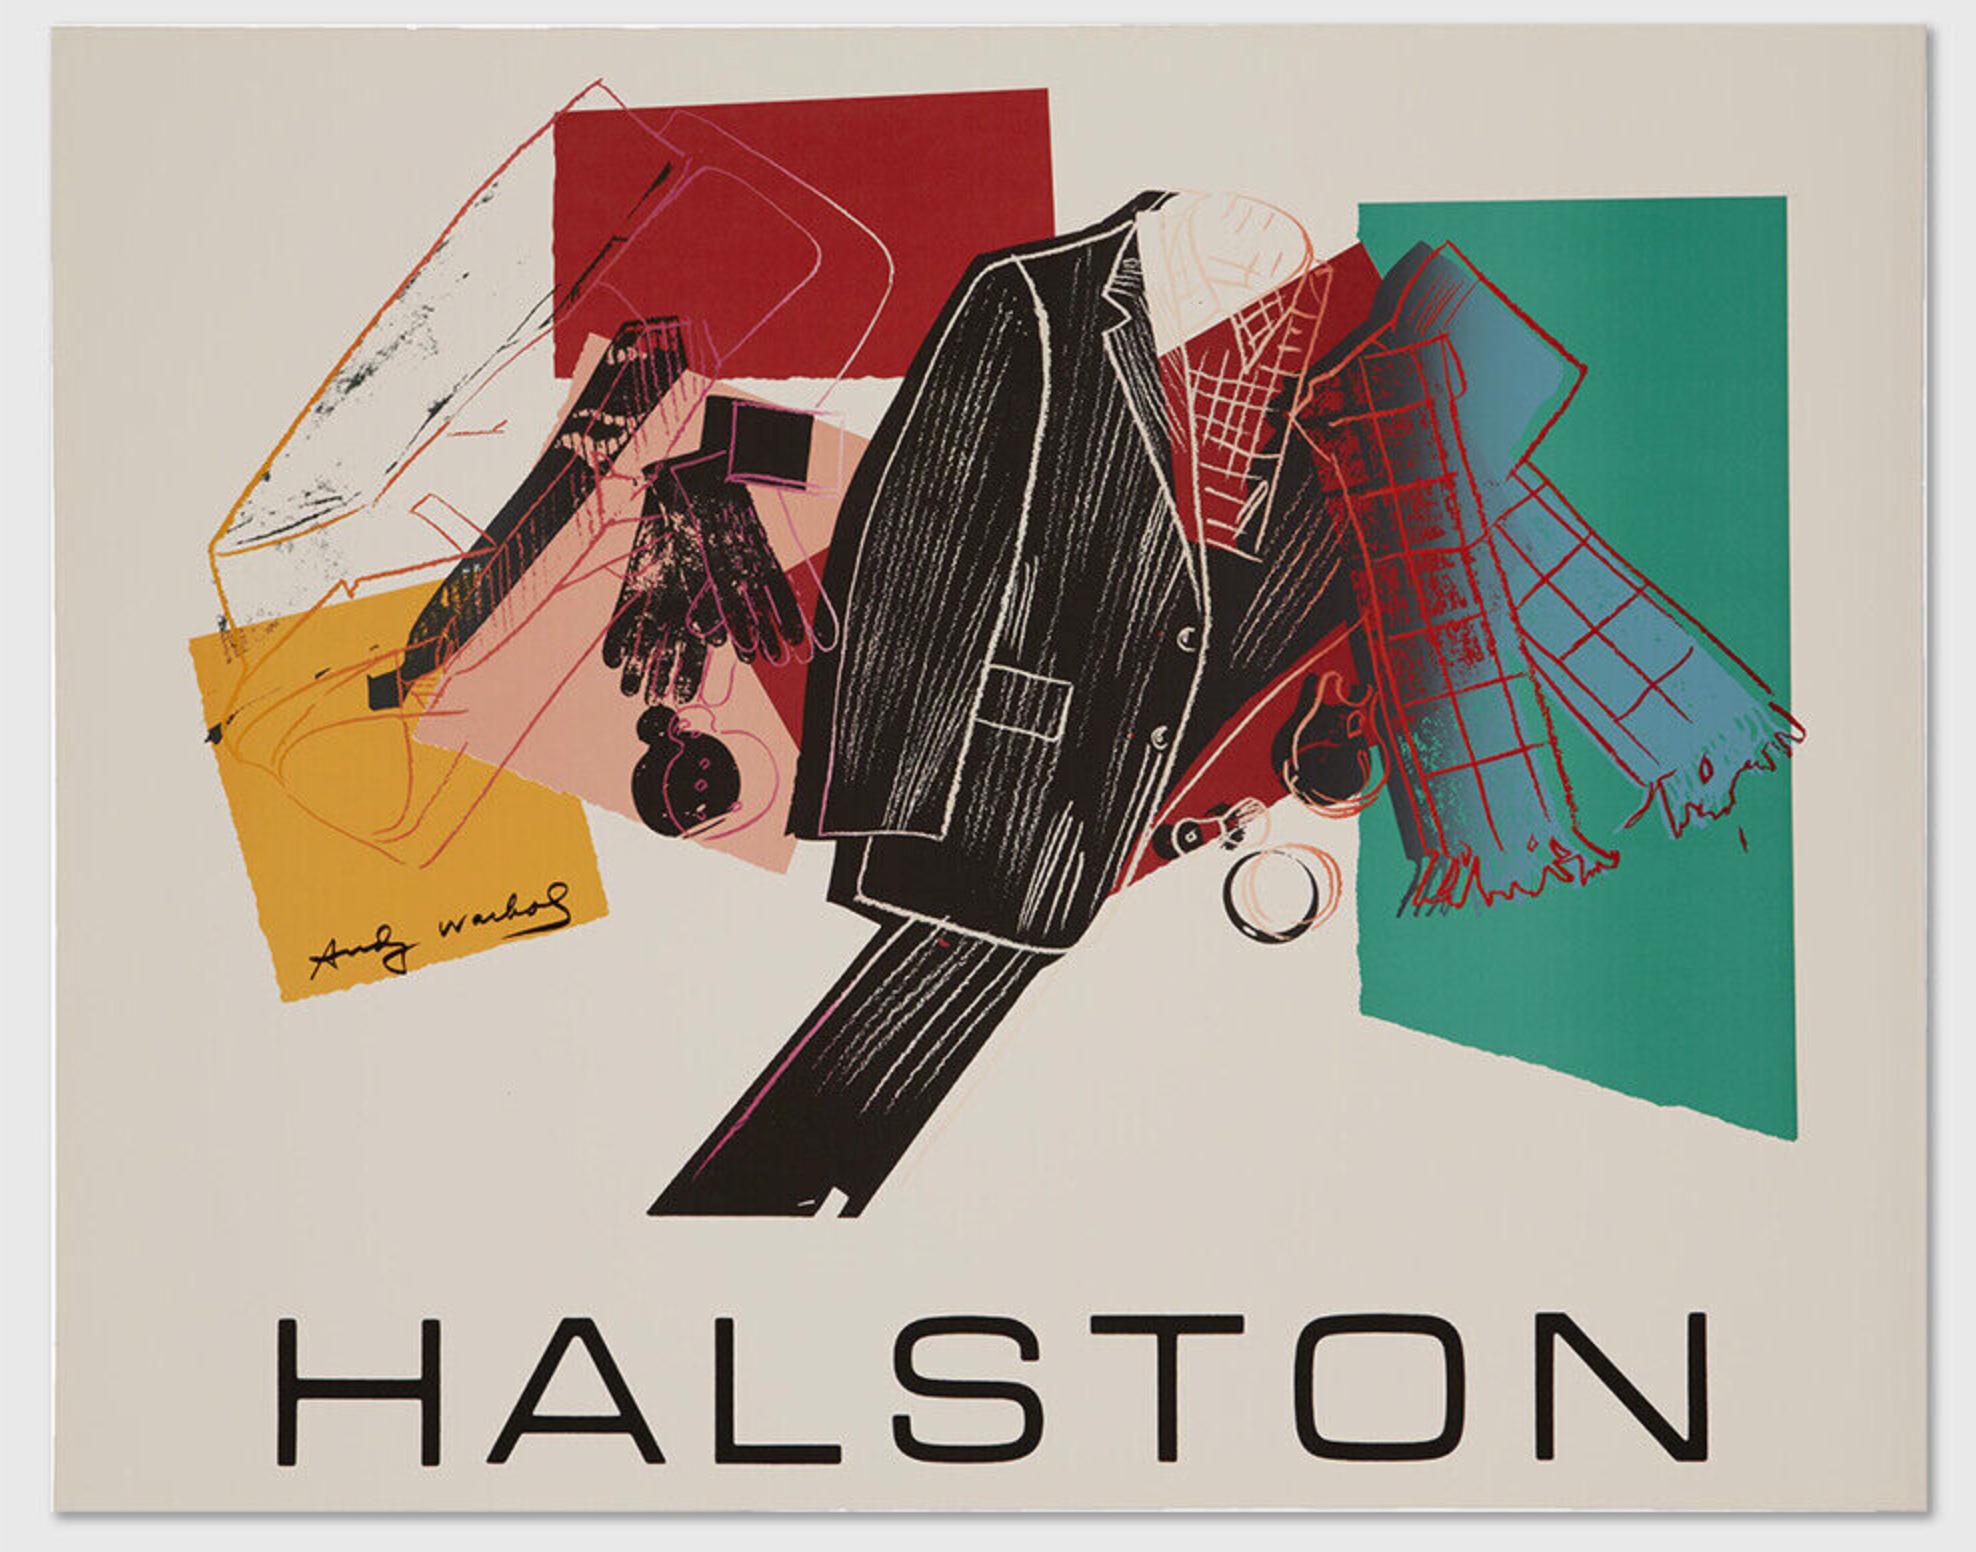 Andy Warhol - Halston Men's Wear Werbekampagnenplakat für Männer